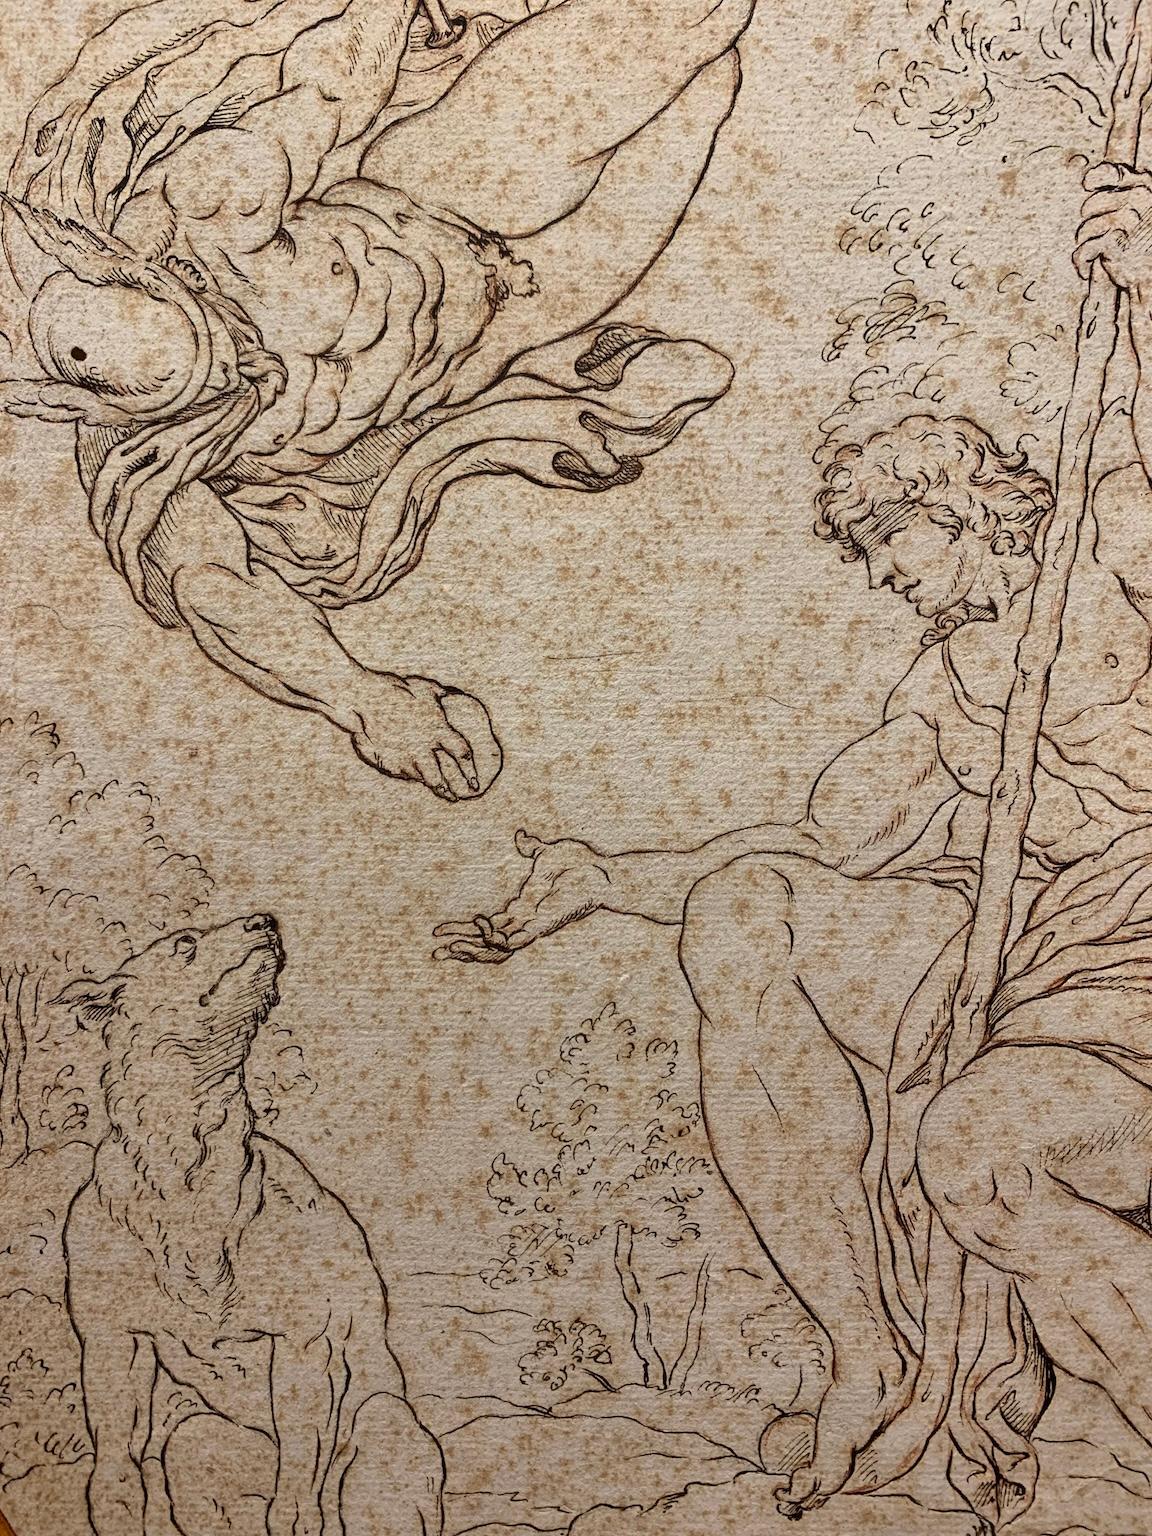 Feder, Bleistift und Rötelzeichnung auf Papier. 
Das Thema erinnert an die Fresken von Annibale Carracci im Palazzo Farnese in Rom (1597-1607), insbesondere an die Episode, in der Hermes den "Apfel der Zwietracht" an Paris übergibt, der darüber